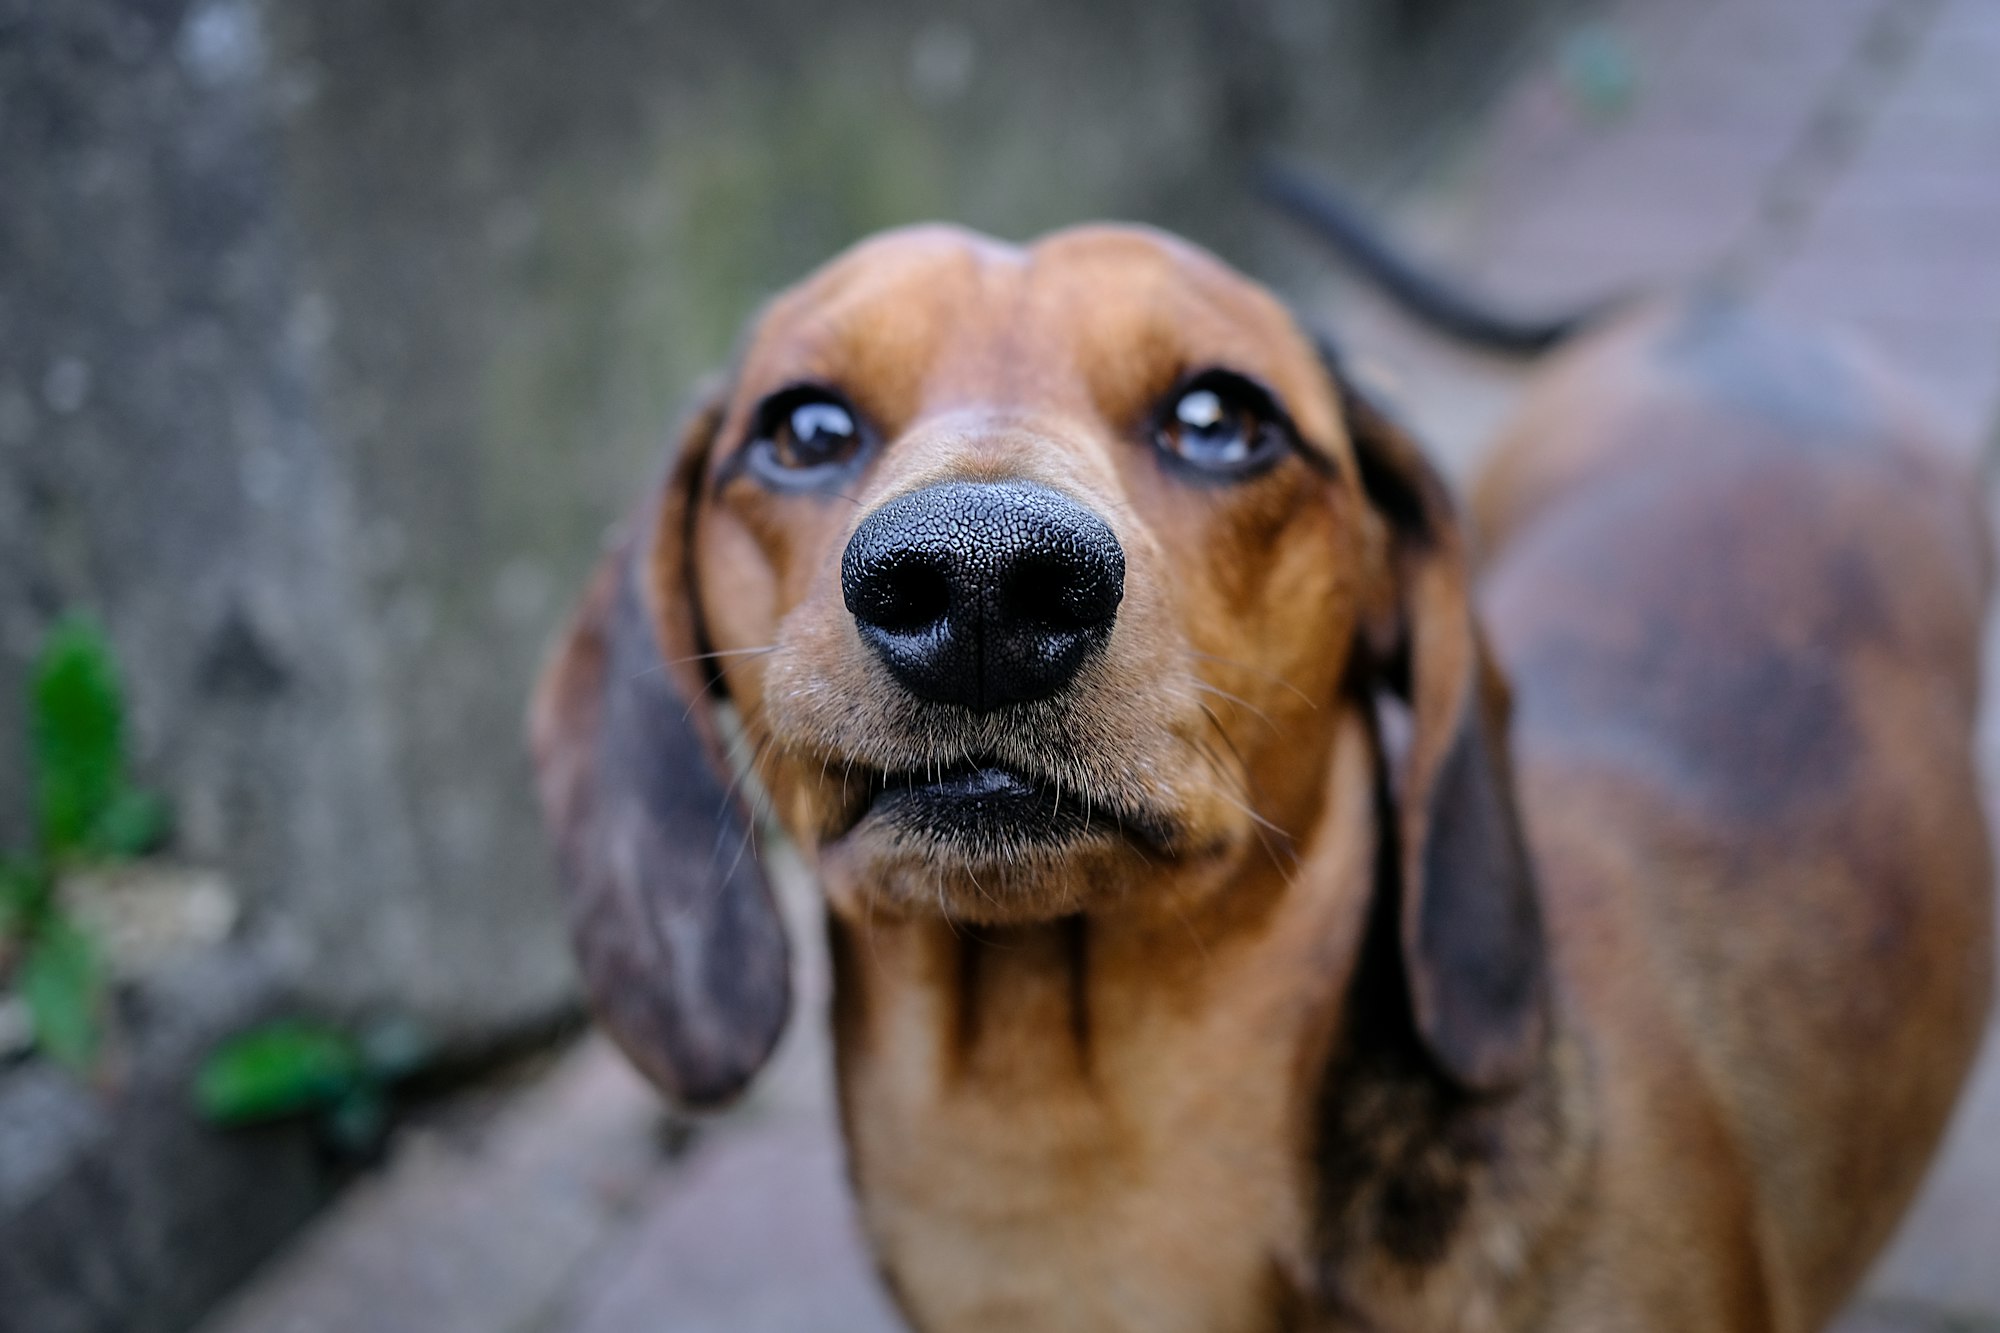 Weiner Dog looking grumpy